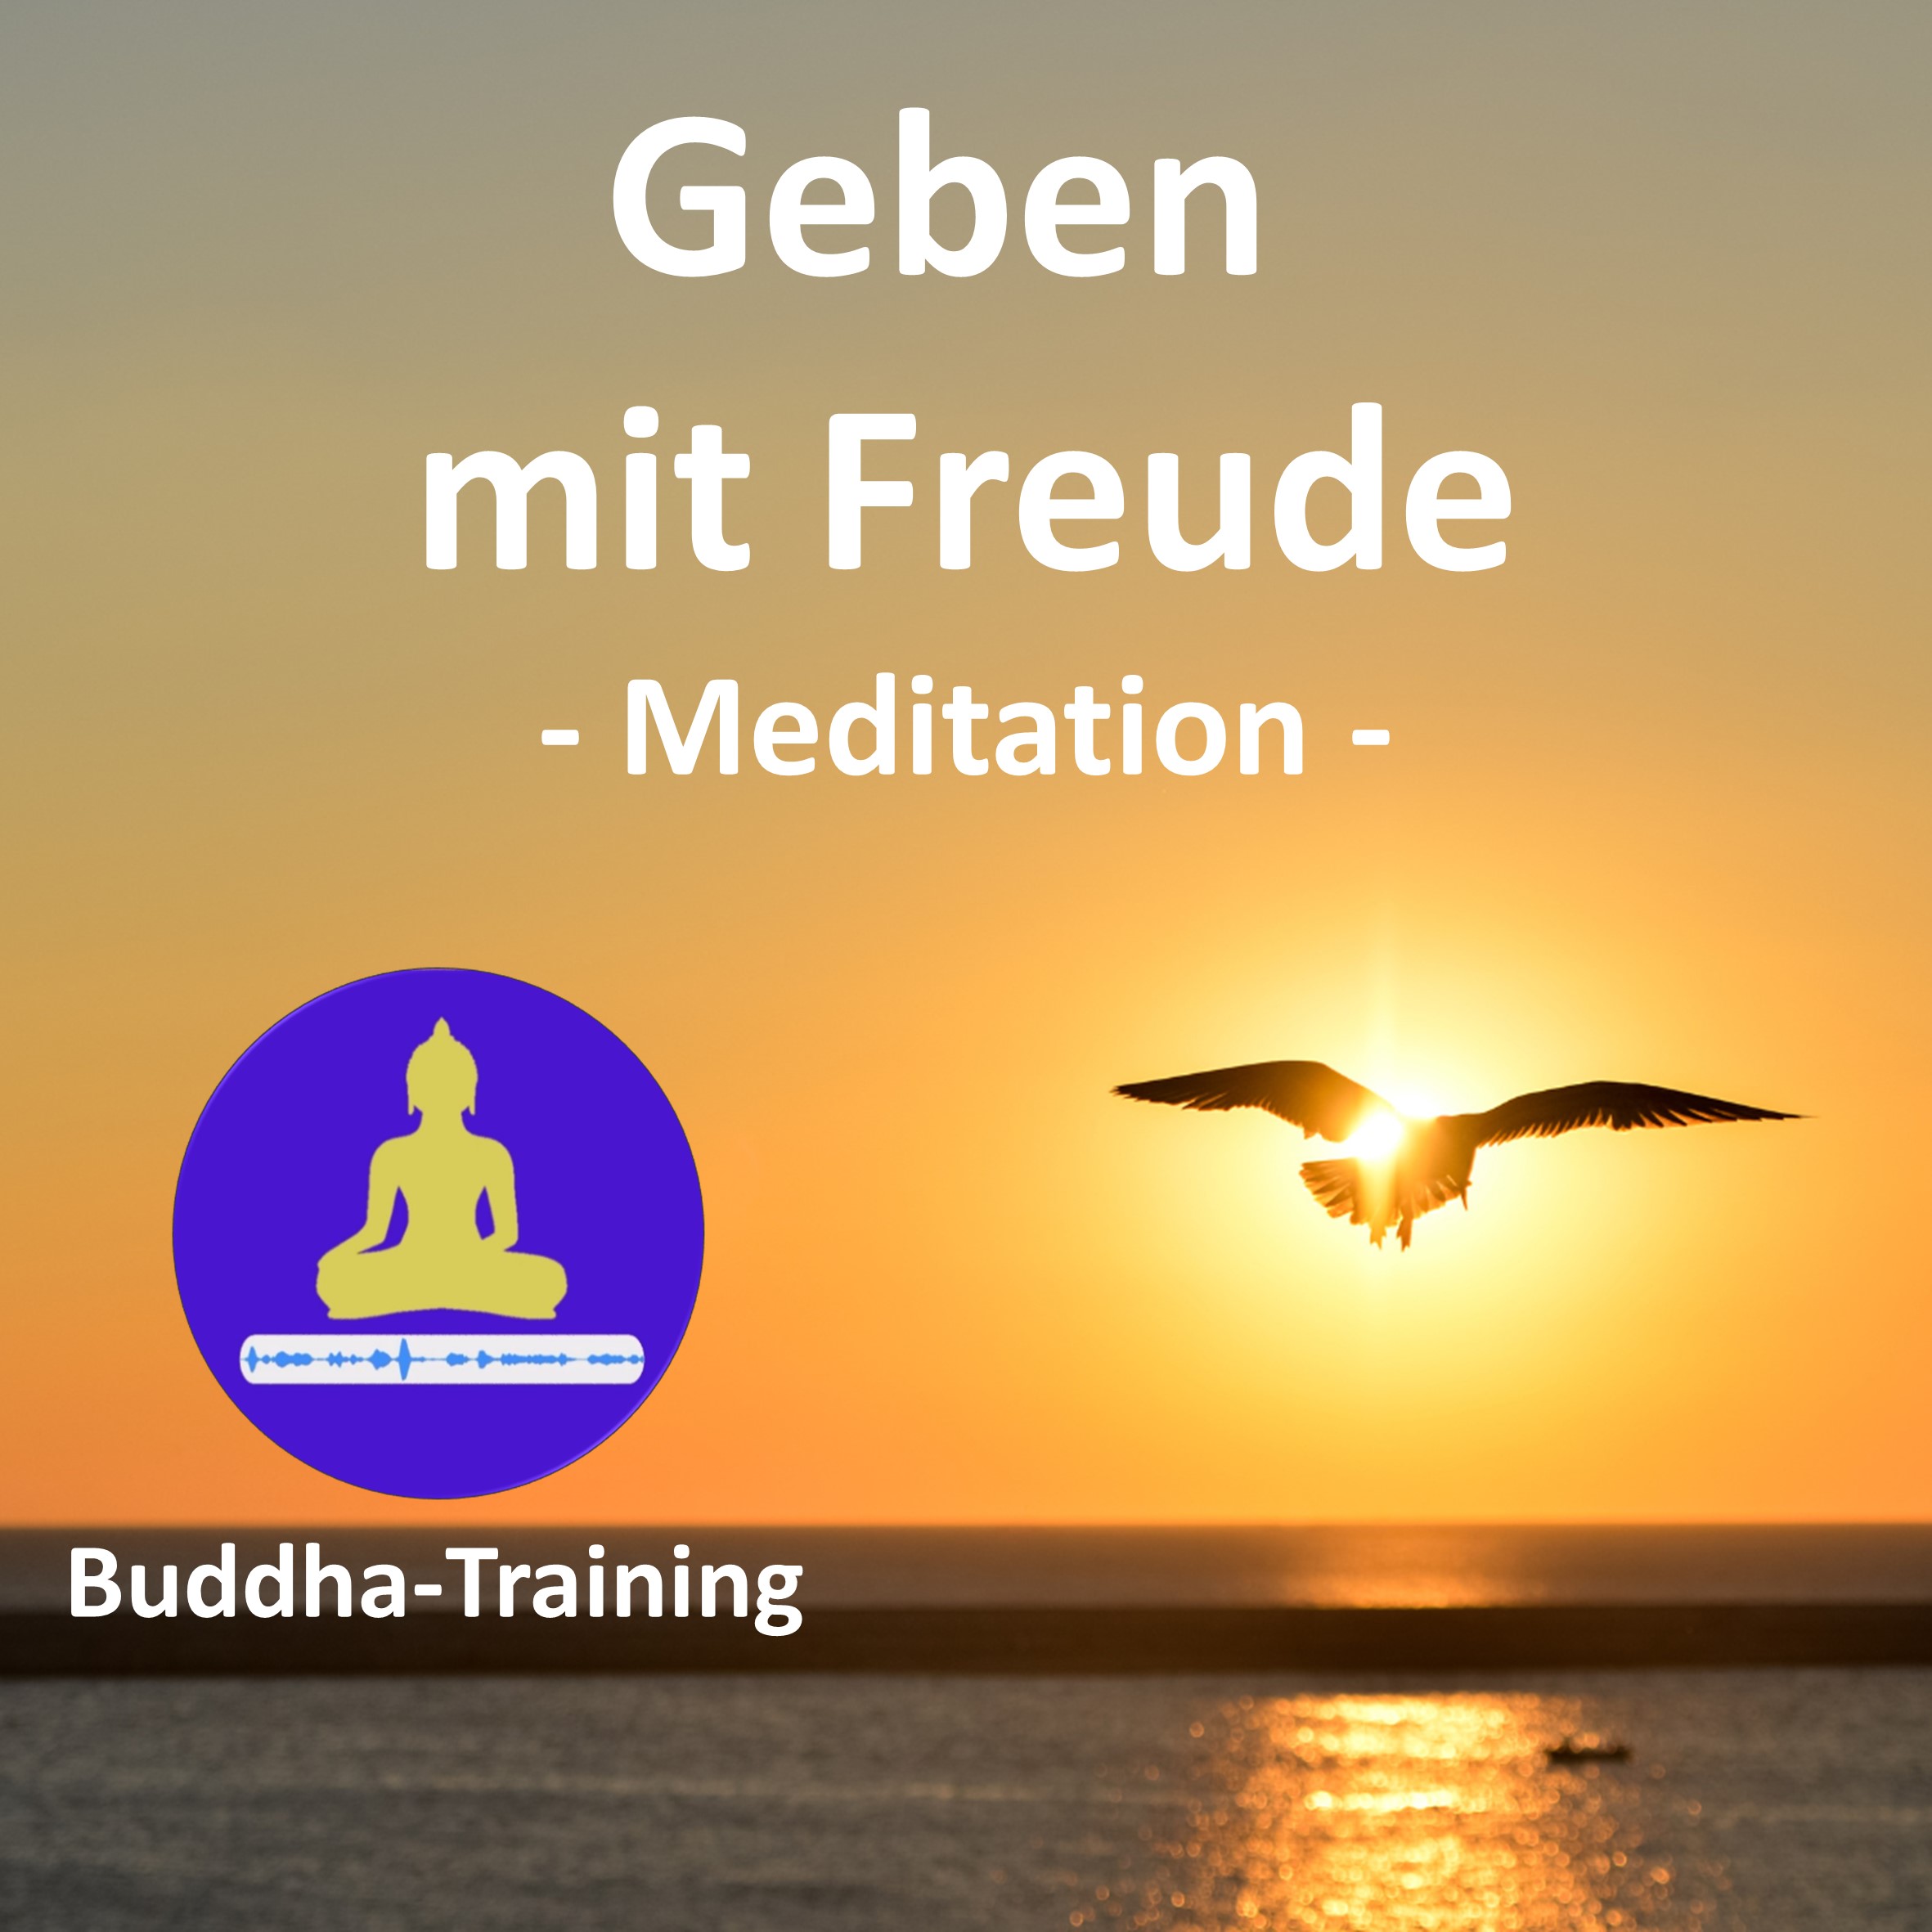 16. Geben mit Freude - Meditation -